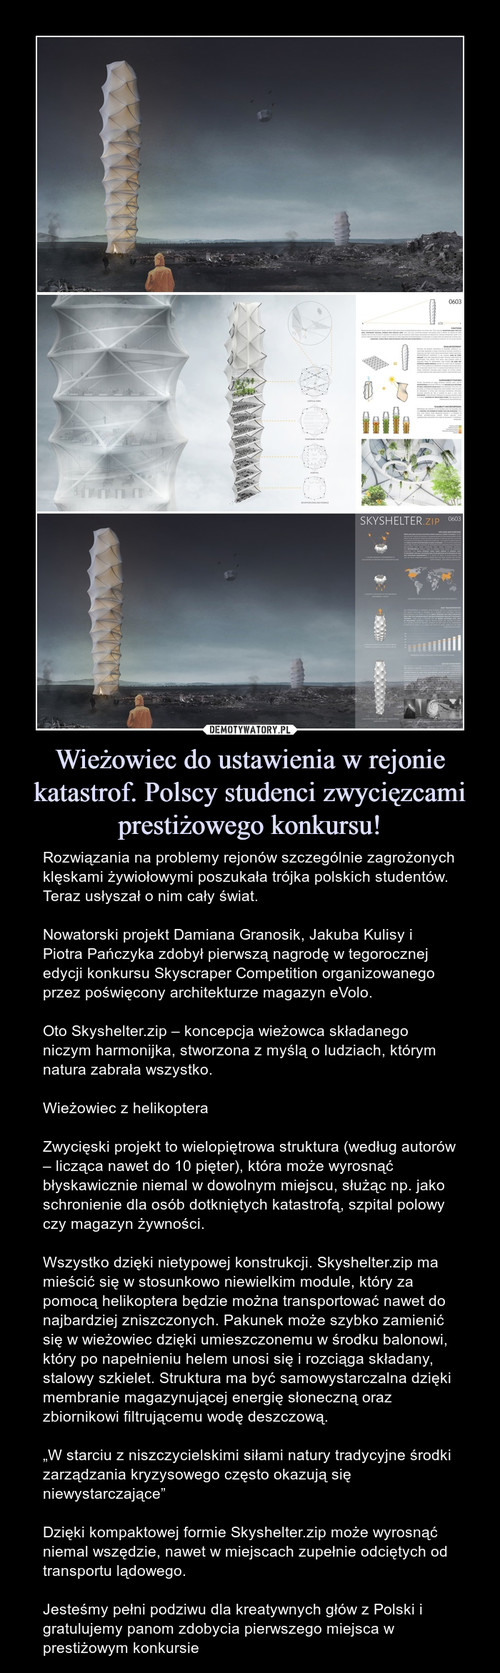 Wieżowiec do ustawienia w rejonie katastrof. Polscy studenci zwycięzcami prestiżowego konkursu!